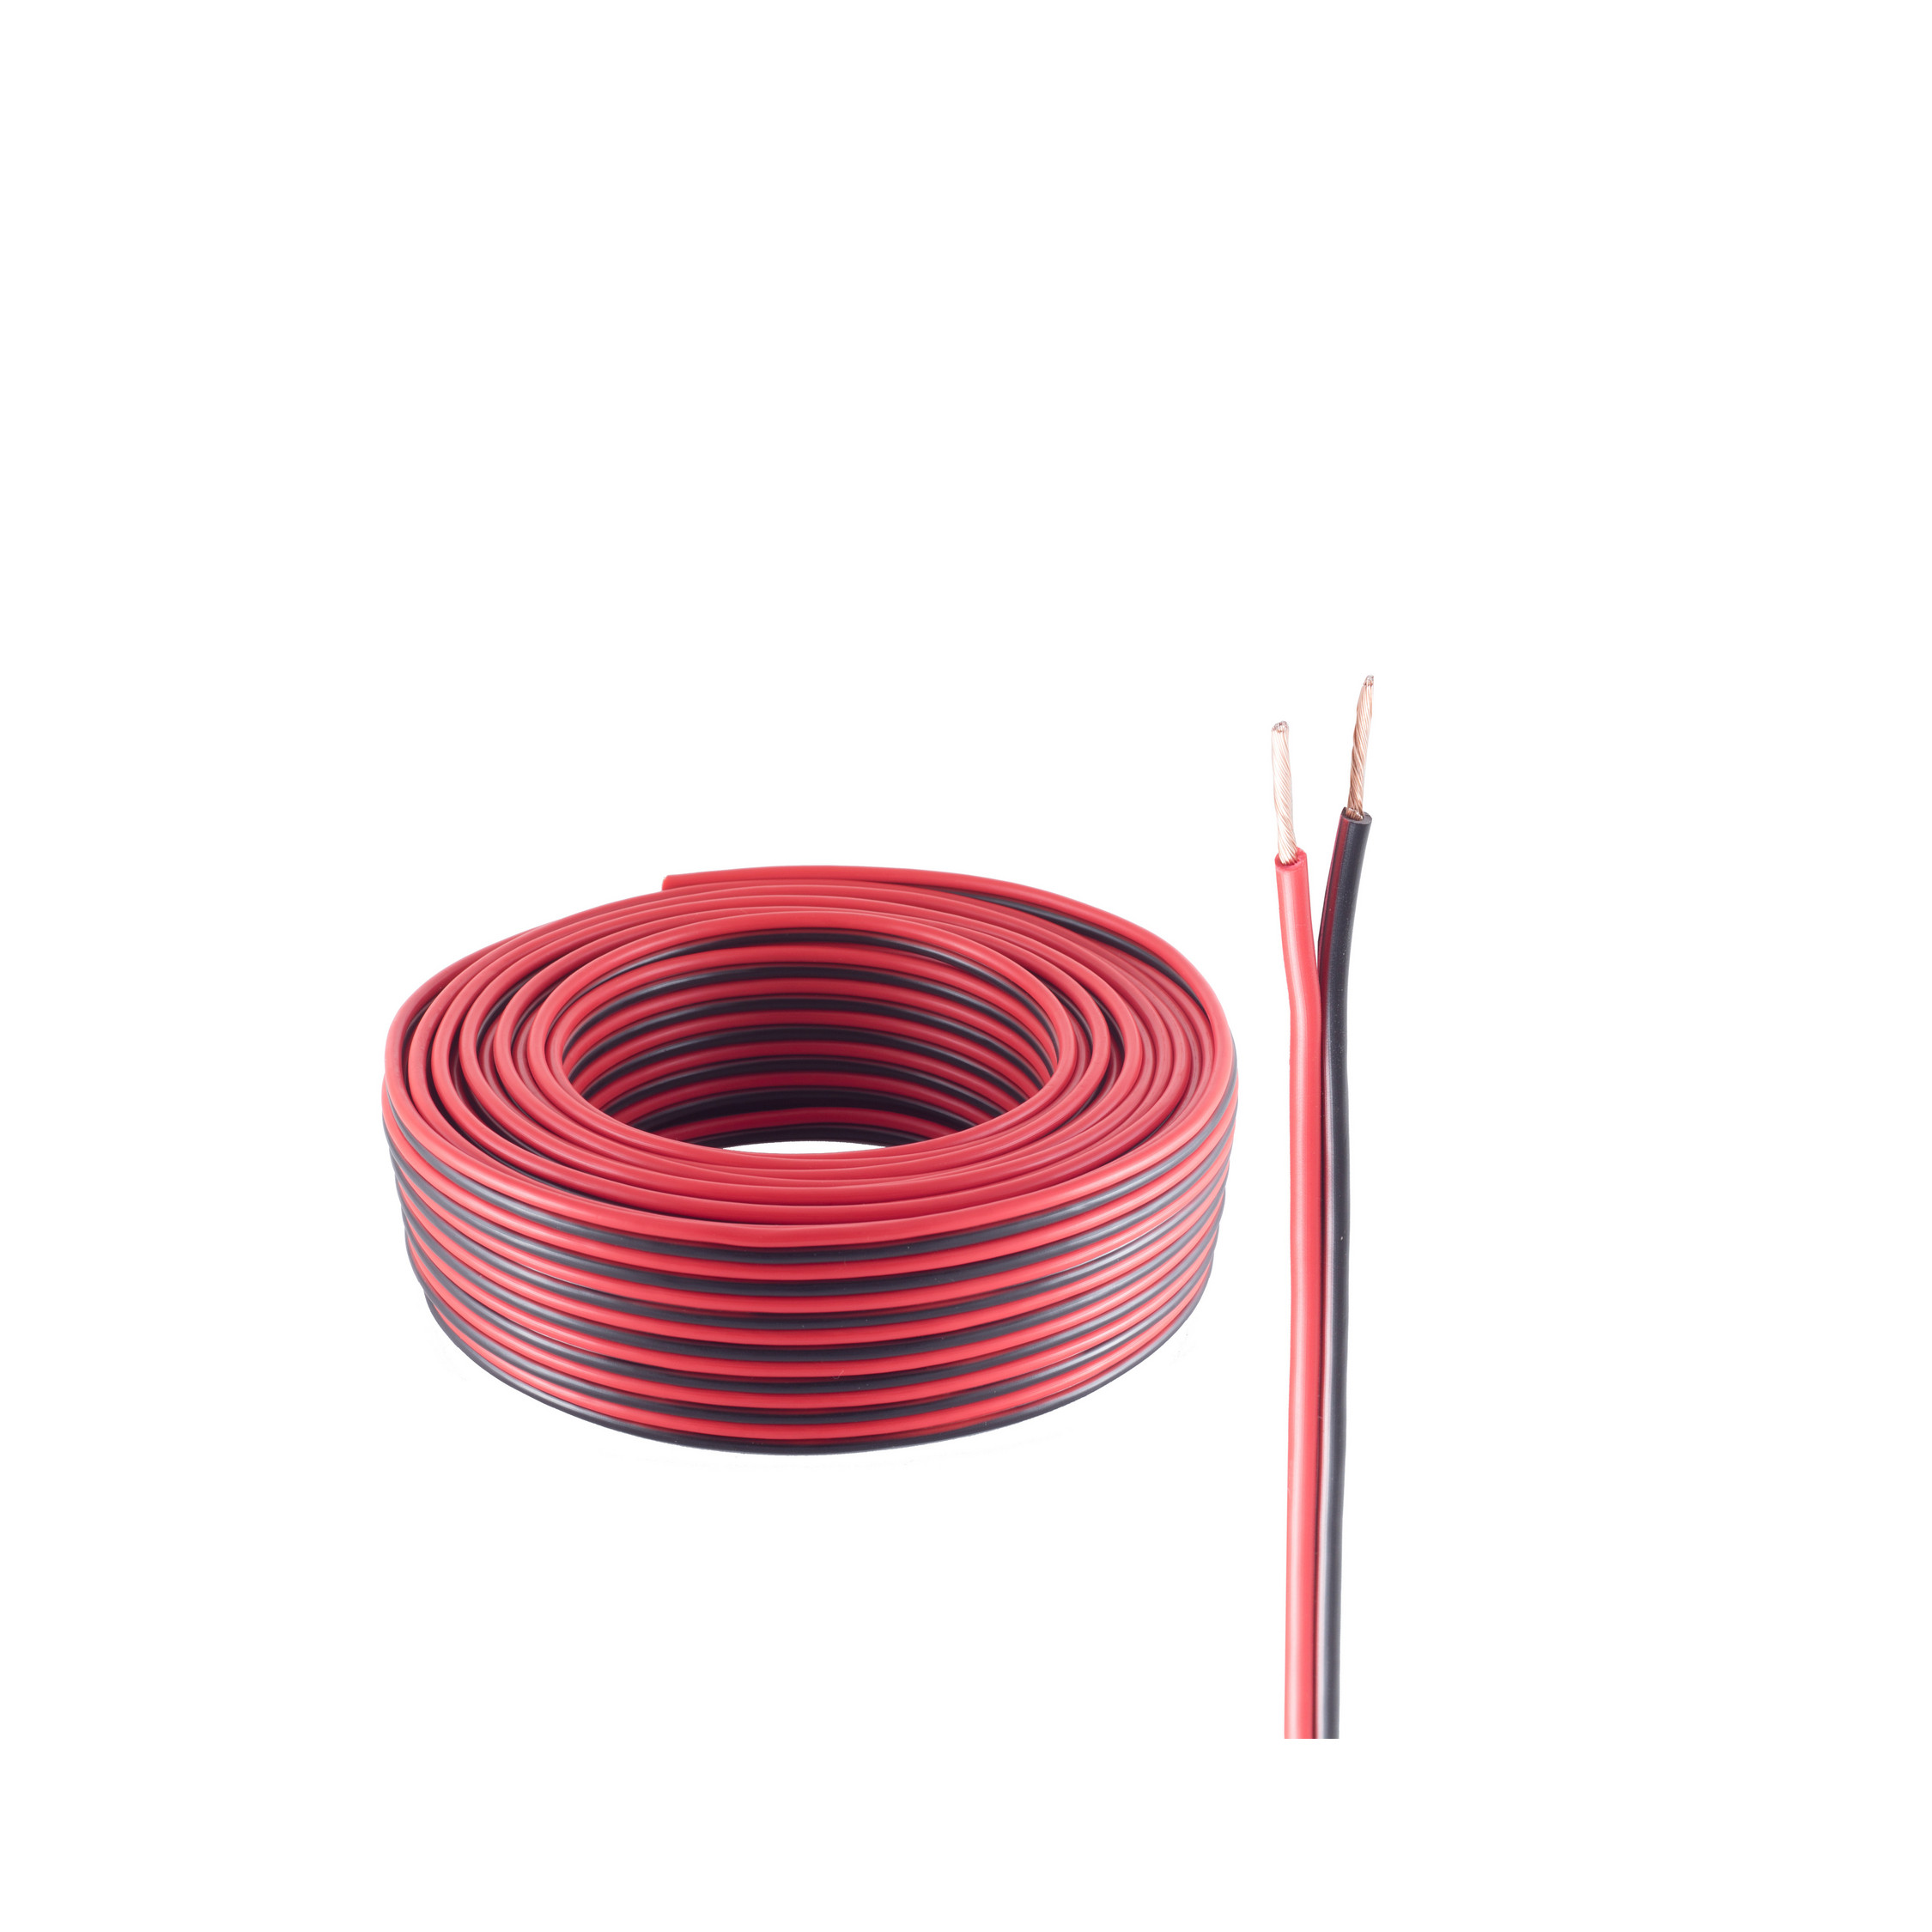 SHIVERPEAKS Lautsprecher rot/schwarz 25m, Kabel, CCA 1,5mm² 25 48x0,20 m LS-Kabel